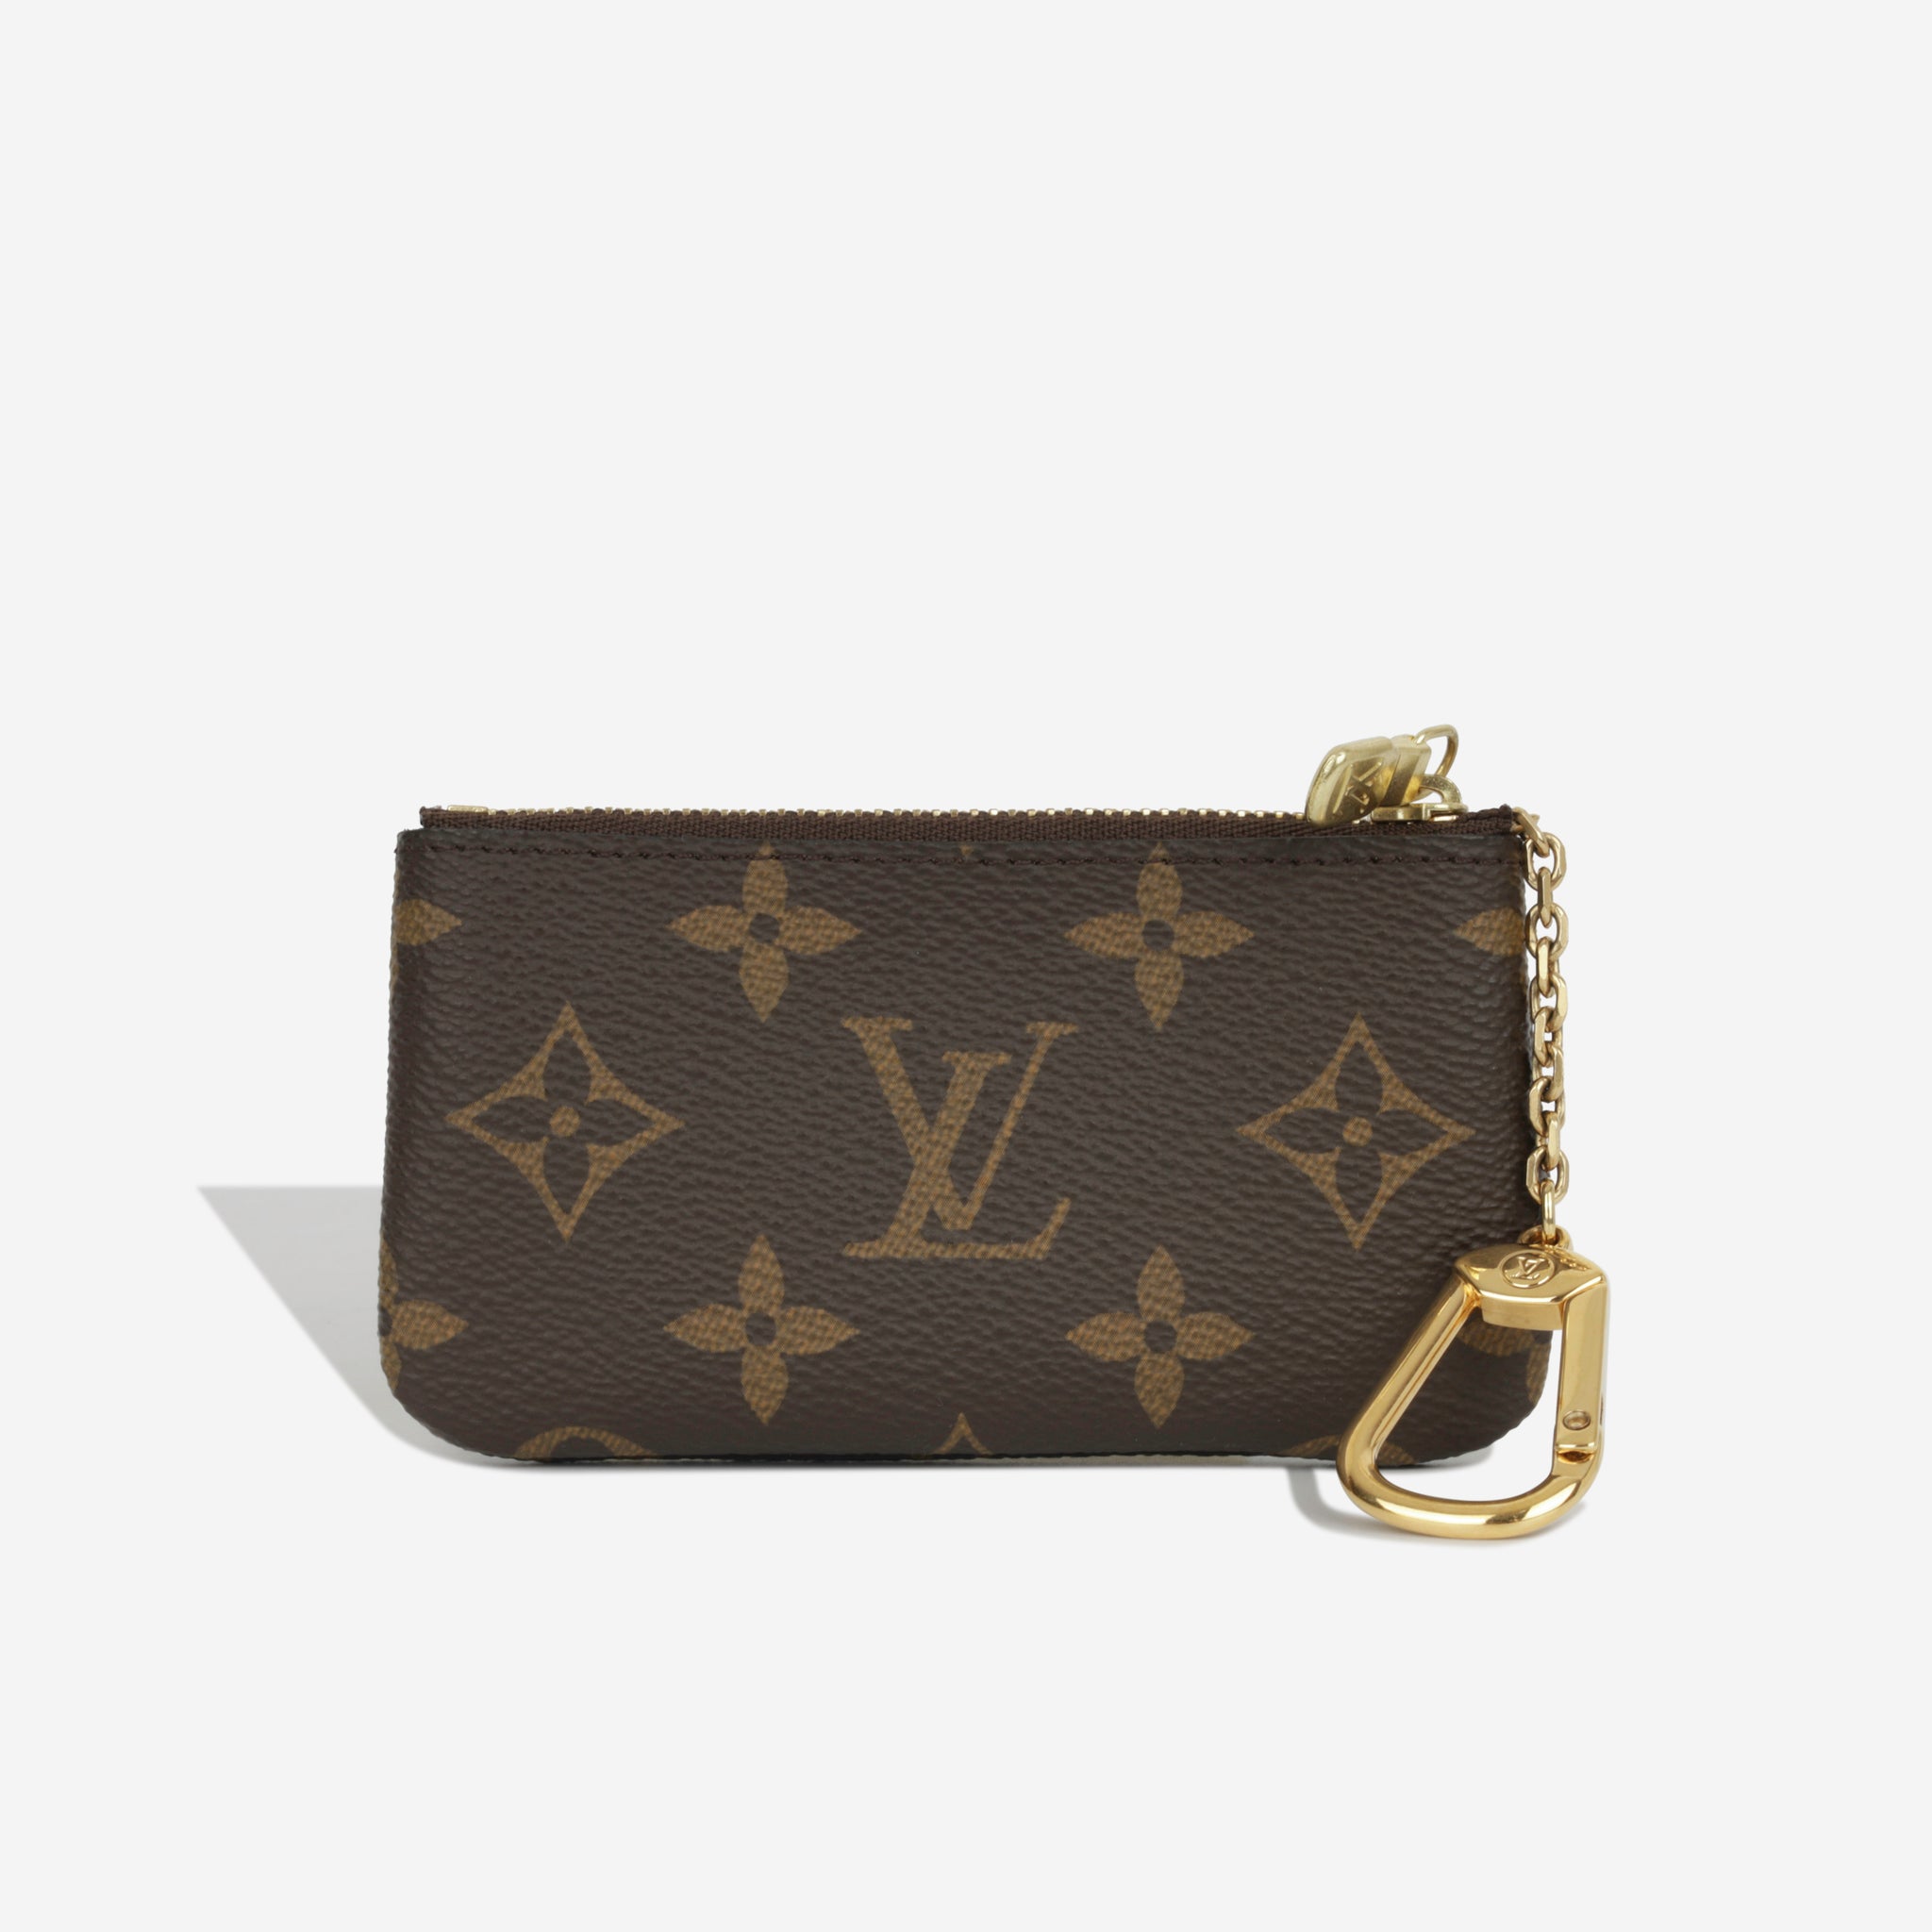 Louis Vuitton Key Pouch – yourvintagelvoe